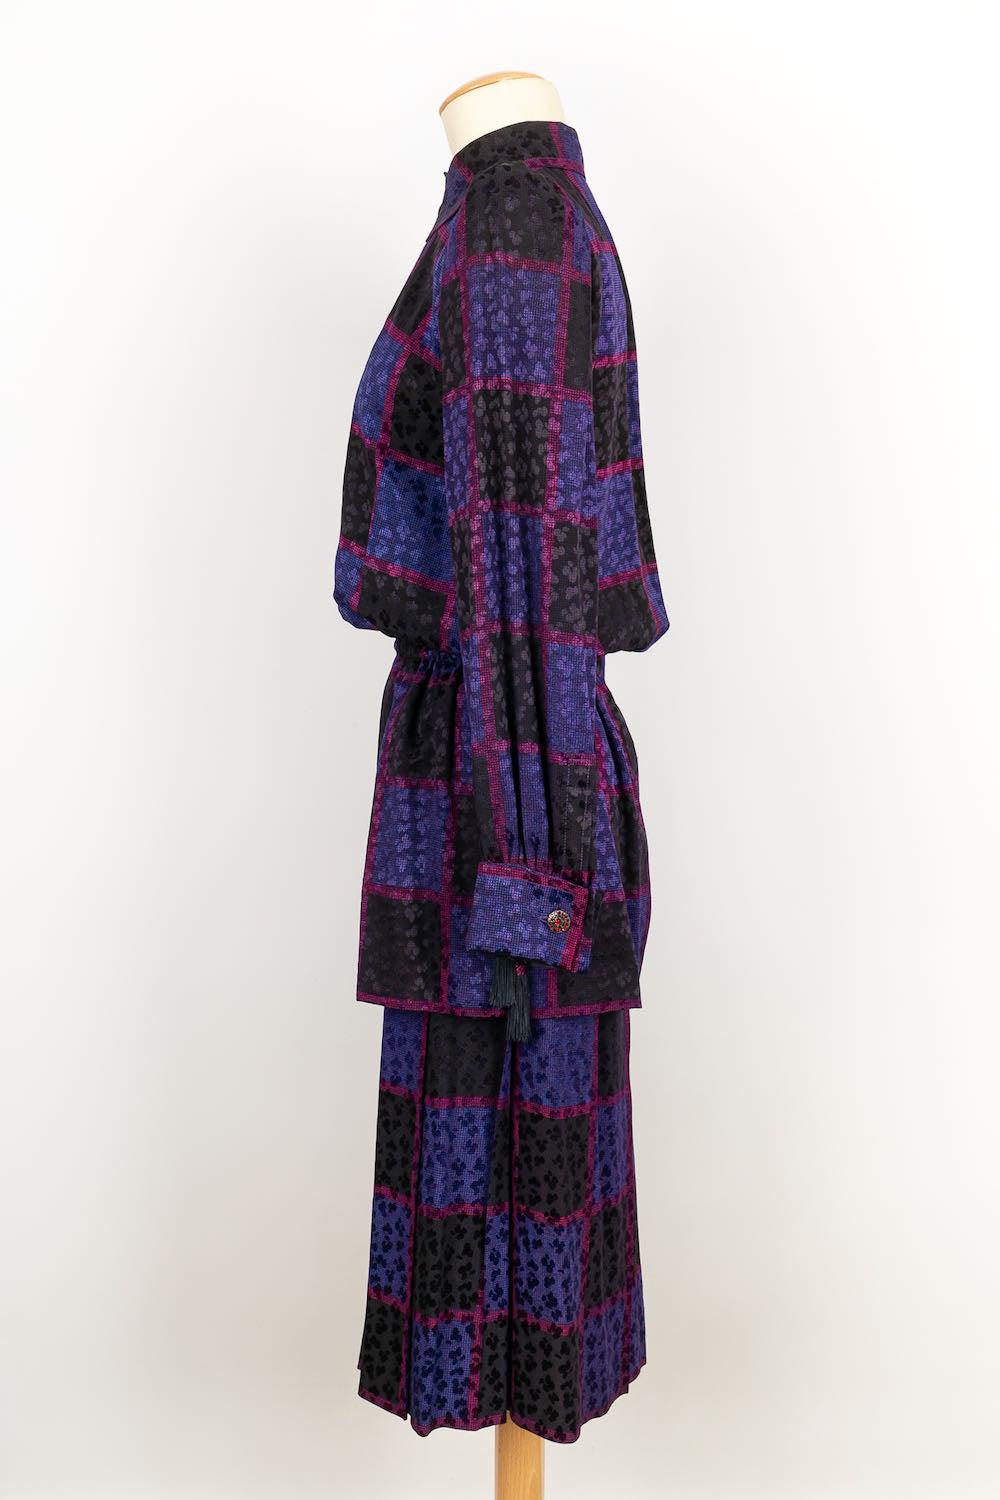 Yves Saint Laurent -(Made in France) Haute Couture Set bestehend aus einem Rock und einer Bluse in Mauvetönen. Keine Größenangabe, es passt eine 36FR.

Zusätzliche Informationen: 
Abmessungen: Hemd: Schulterbreite: 36 cm, Brustkorb: 50 cm, Taille: